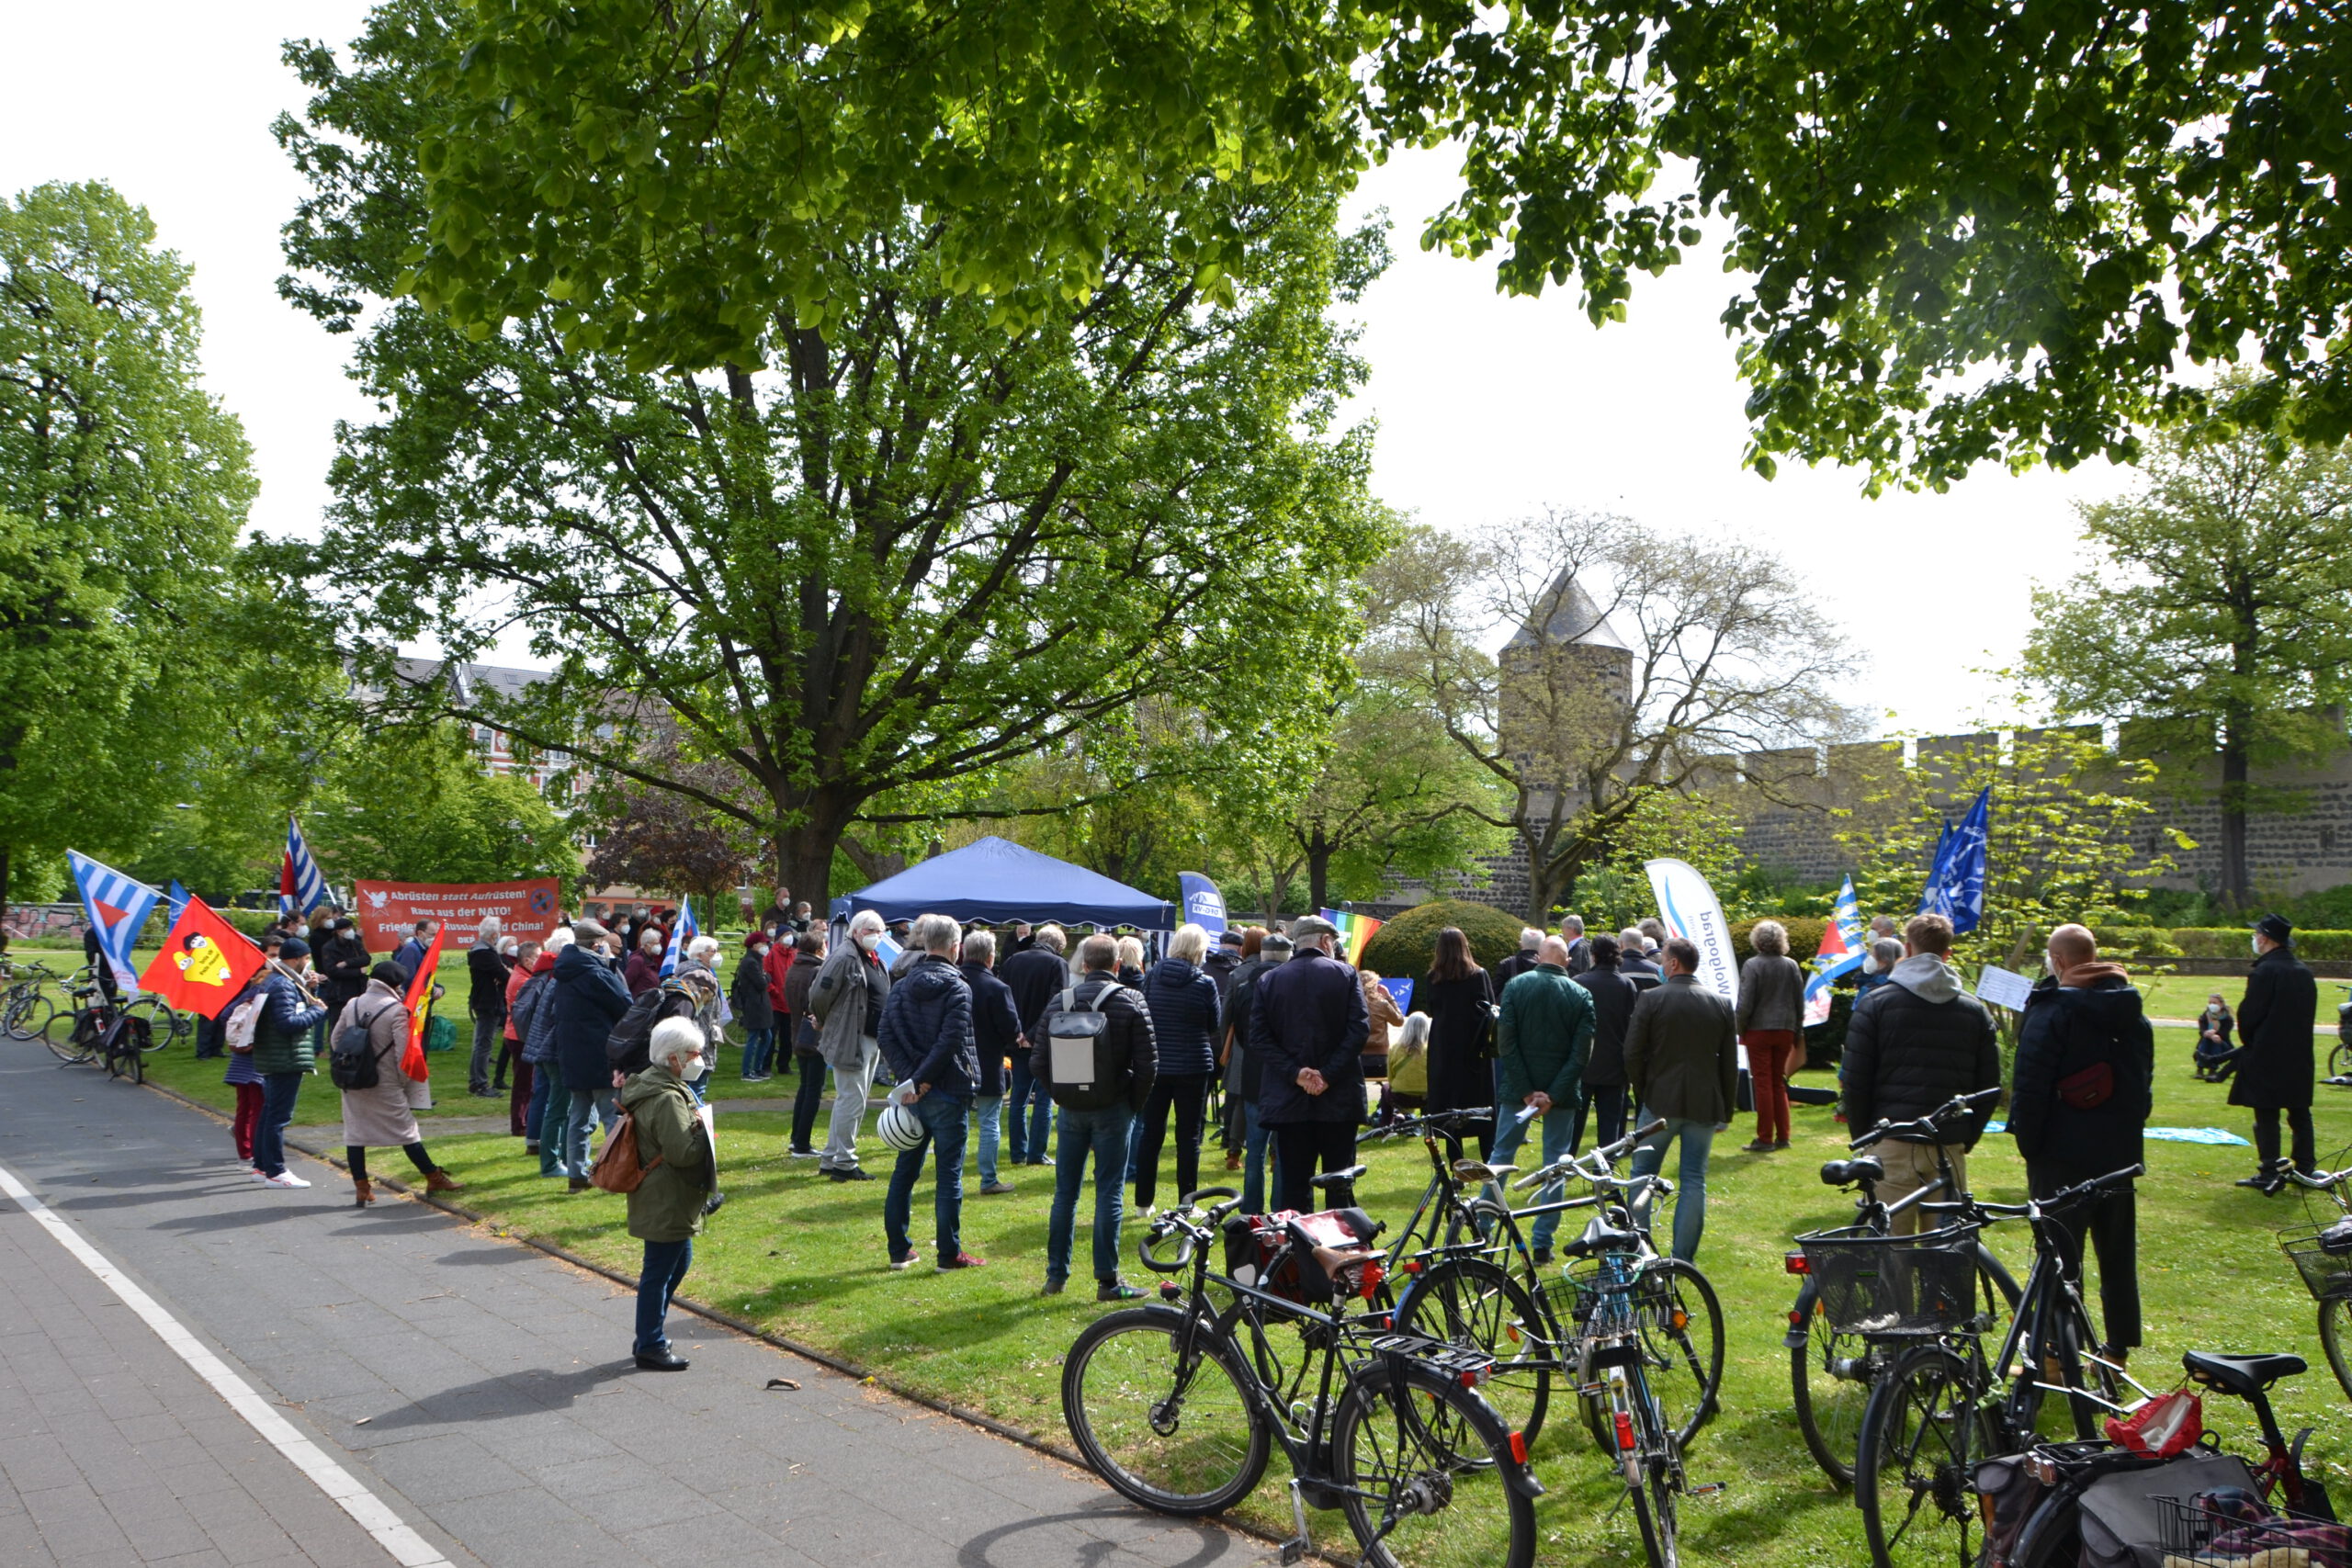 Menschen mit Fahnen gruppieren sich um einen Mittelpunkt in einem sonnigen grünen Park. Im Vordergrund auf einer Wiese abgestellte Fahrräder.